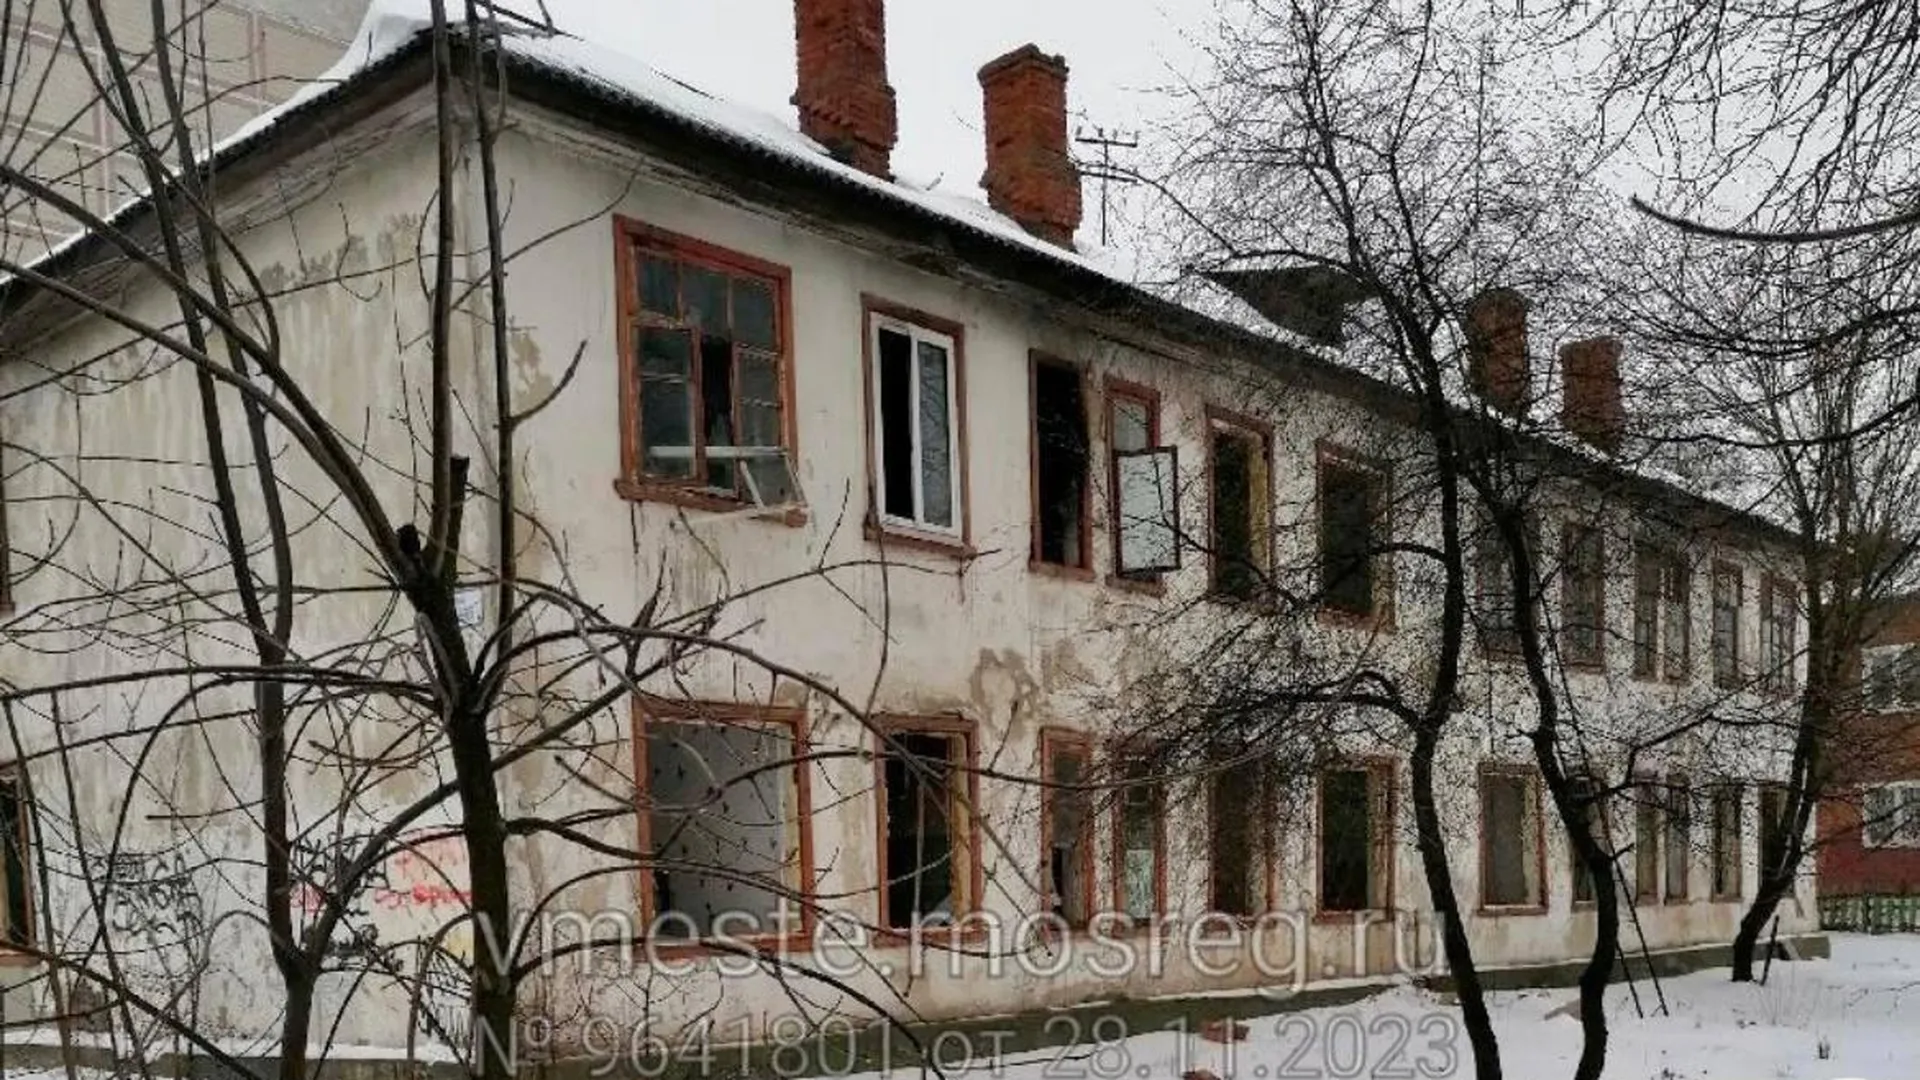 Аварийный дом № 6 снесли на улице Дальней в Серпухове